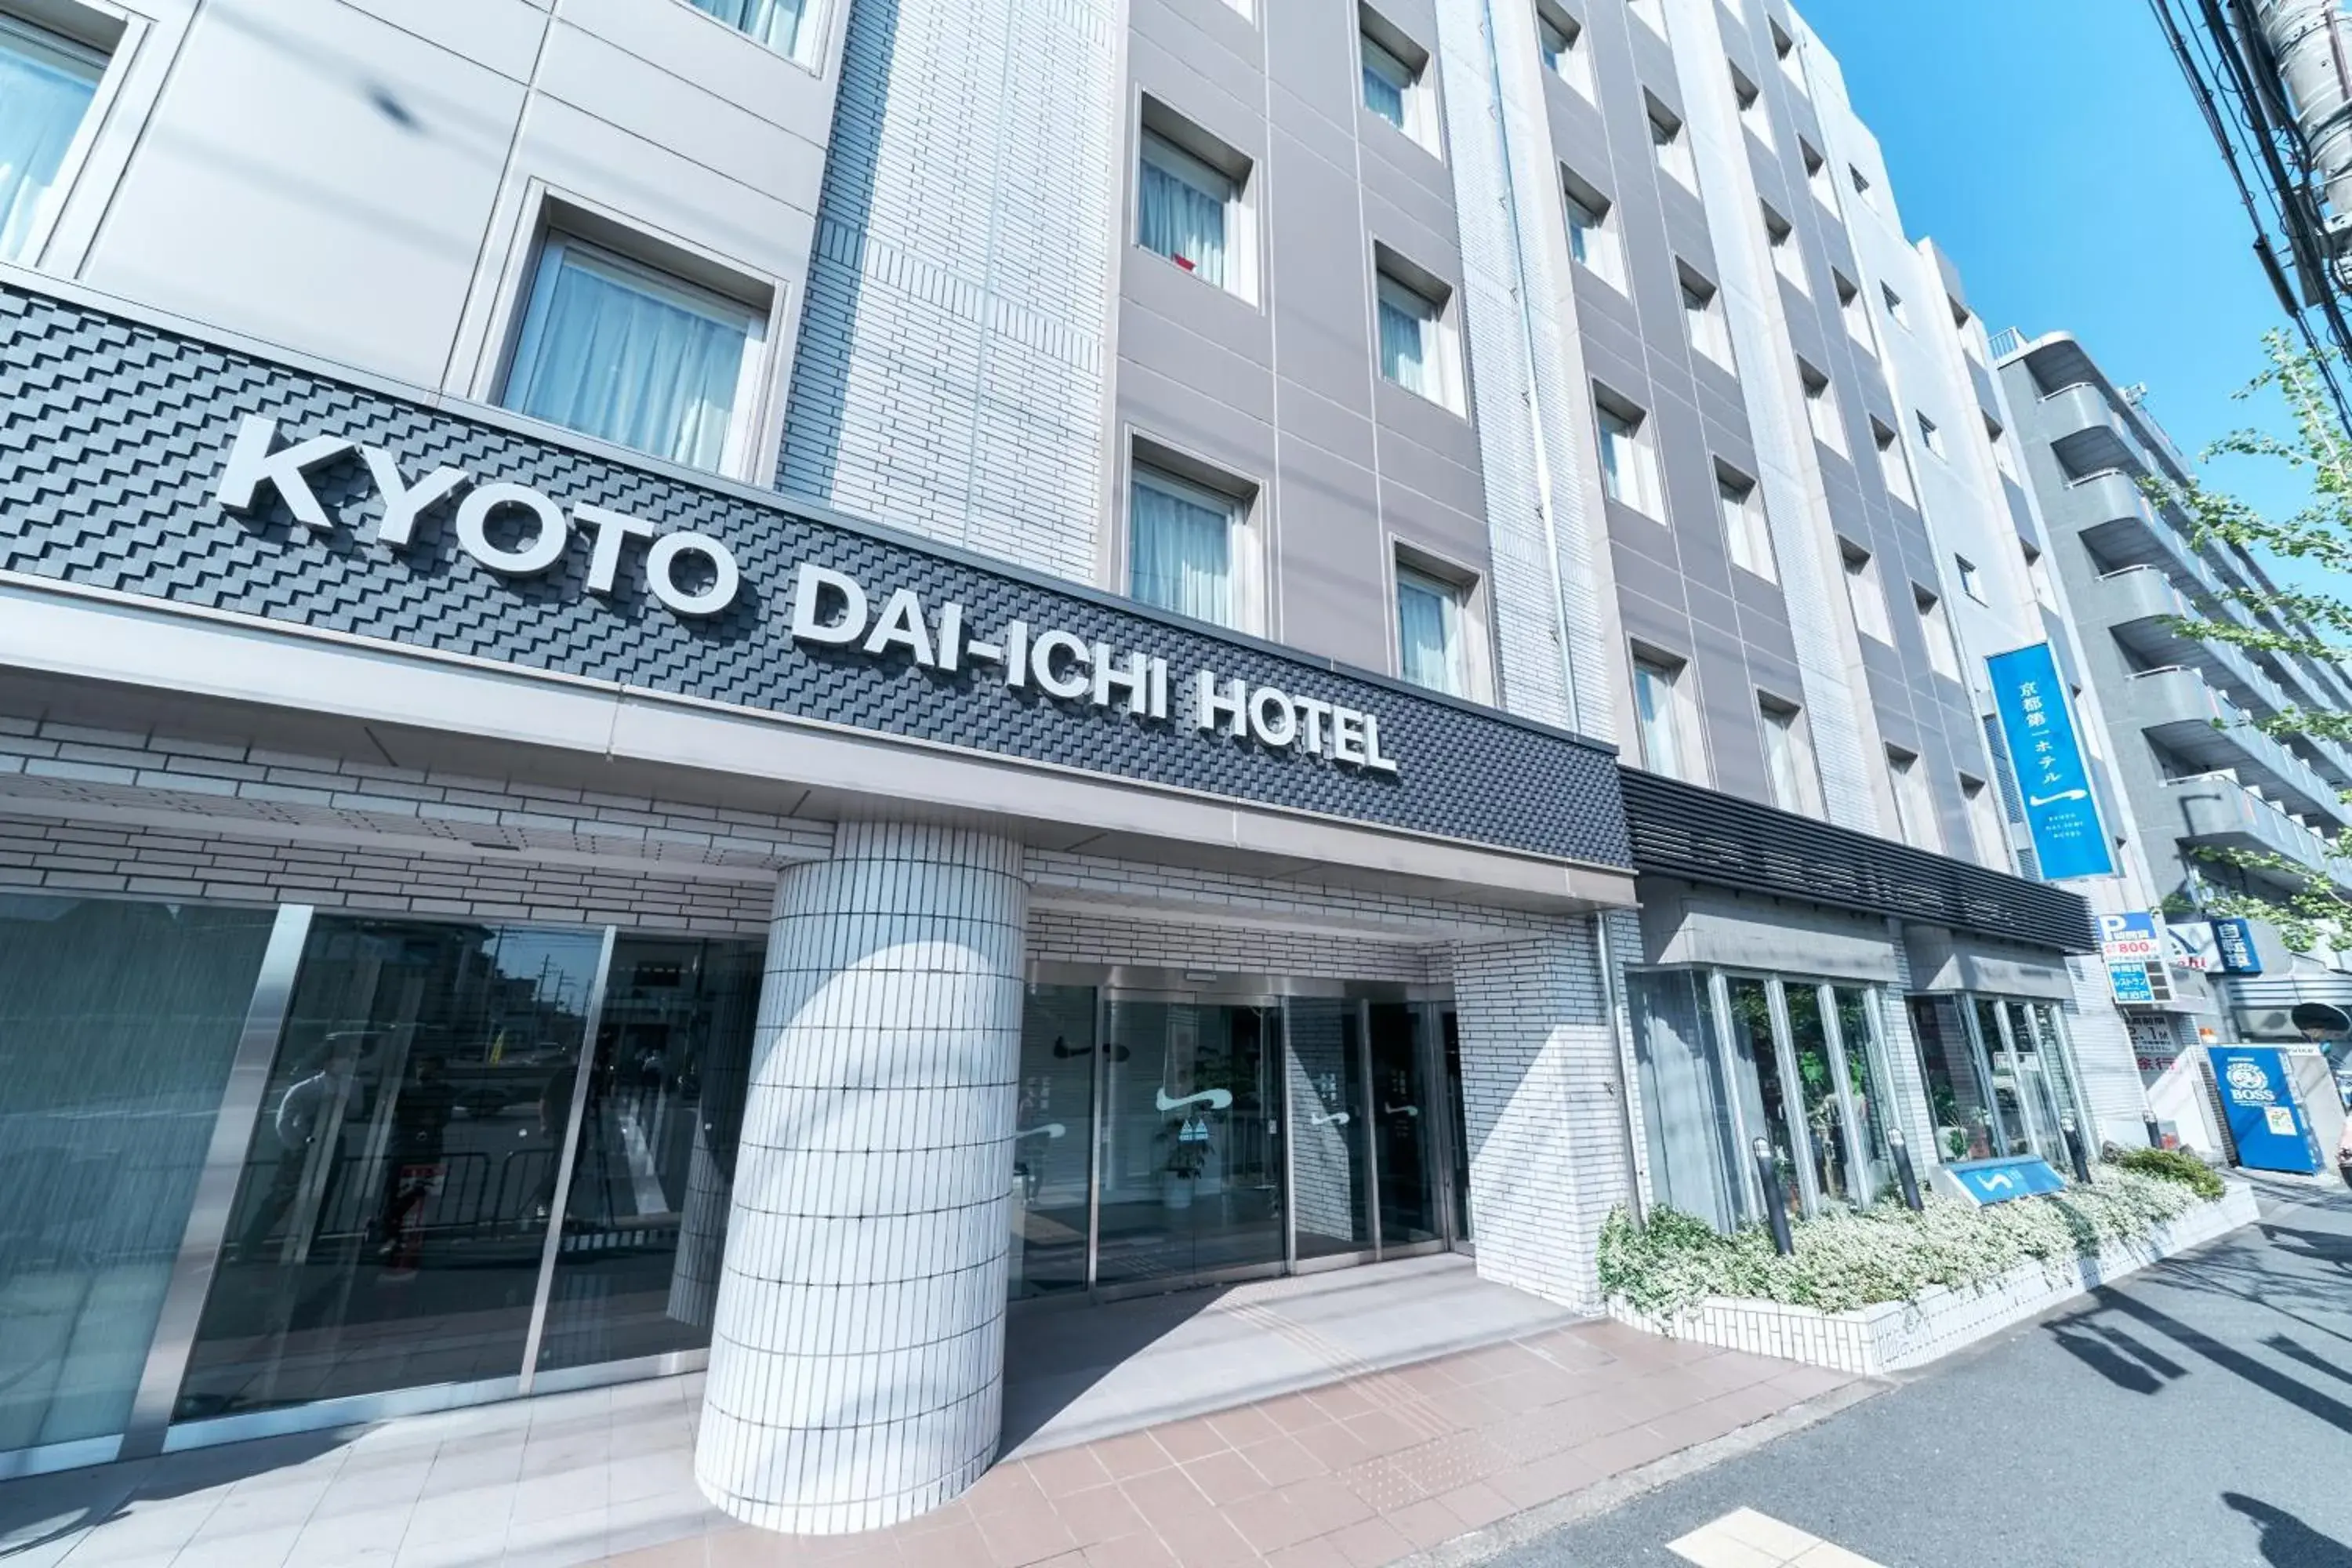 Property Building in Kyoto Daiichi Hotel